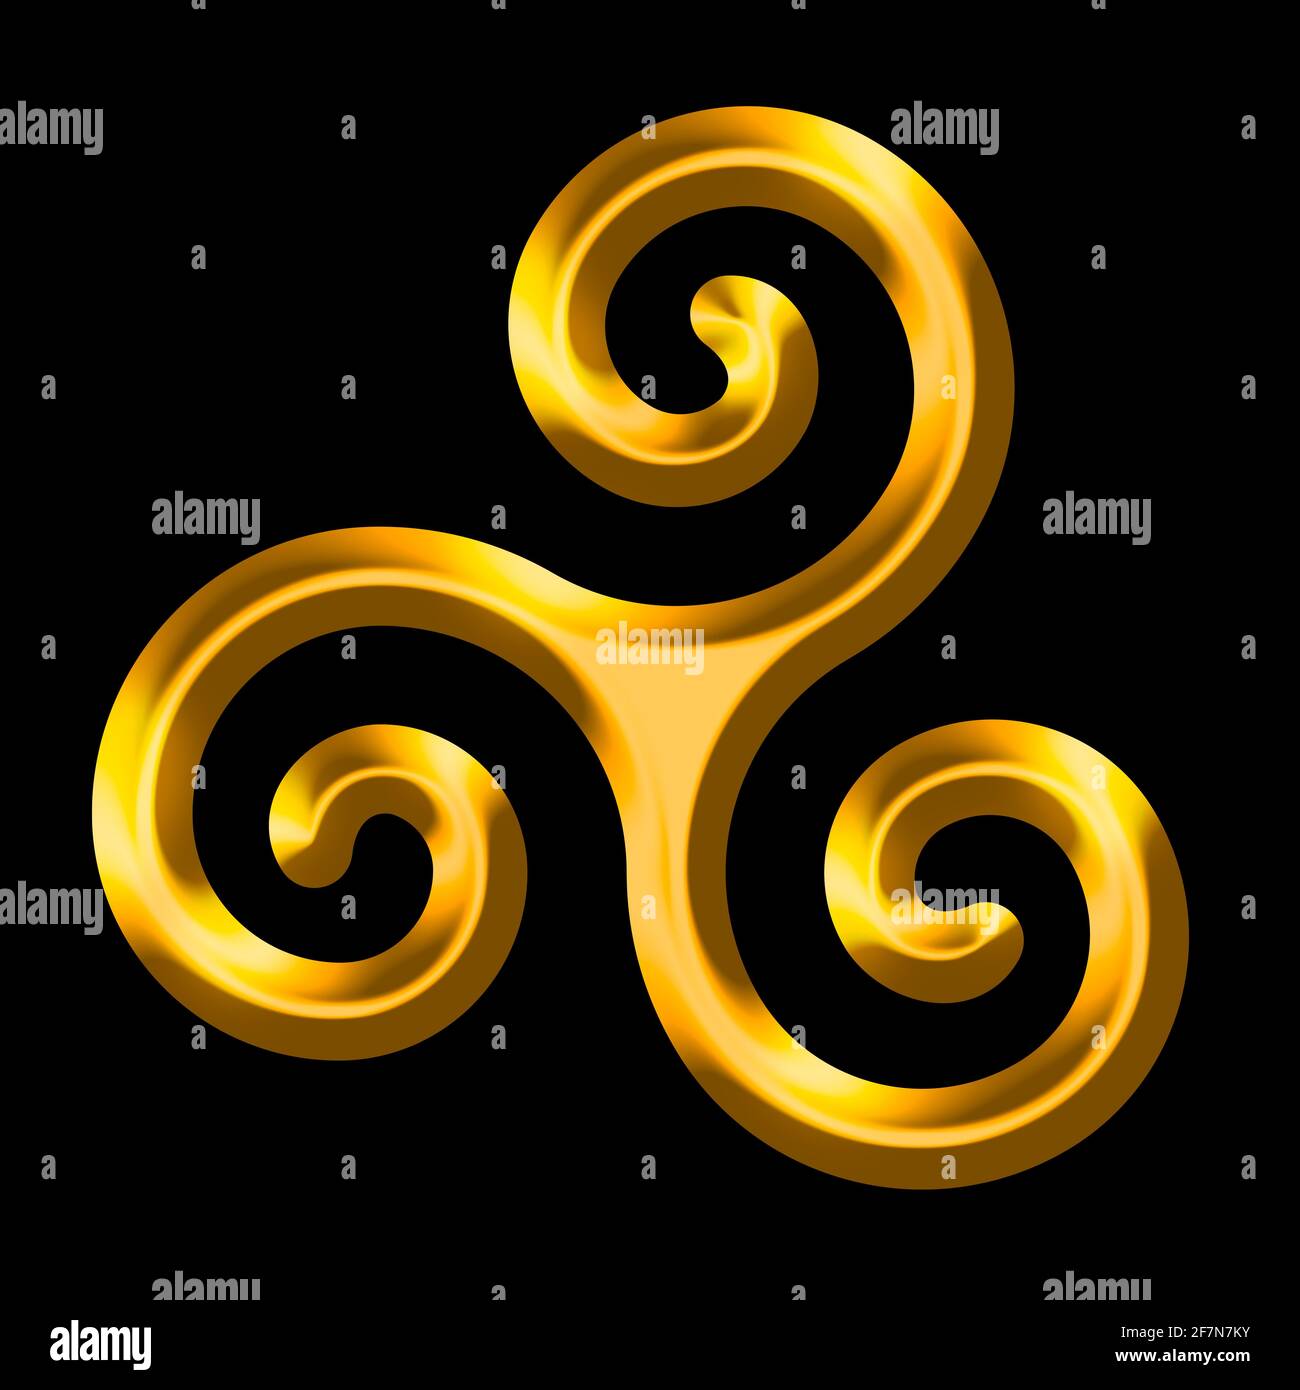 Goldene Triskele auf schwarzem Hintergrund. Triskelion, altes Symbol und Motiv, bestehend aus einer dreifachen Spirale, die Rotationssymmetrie aufweist. Stockfoto